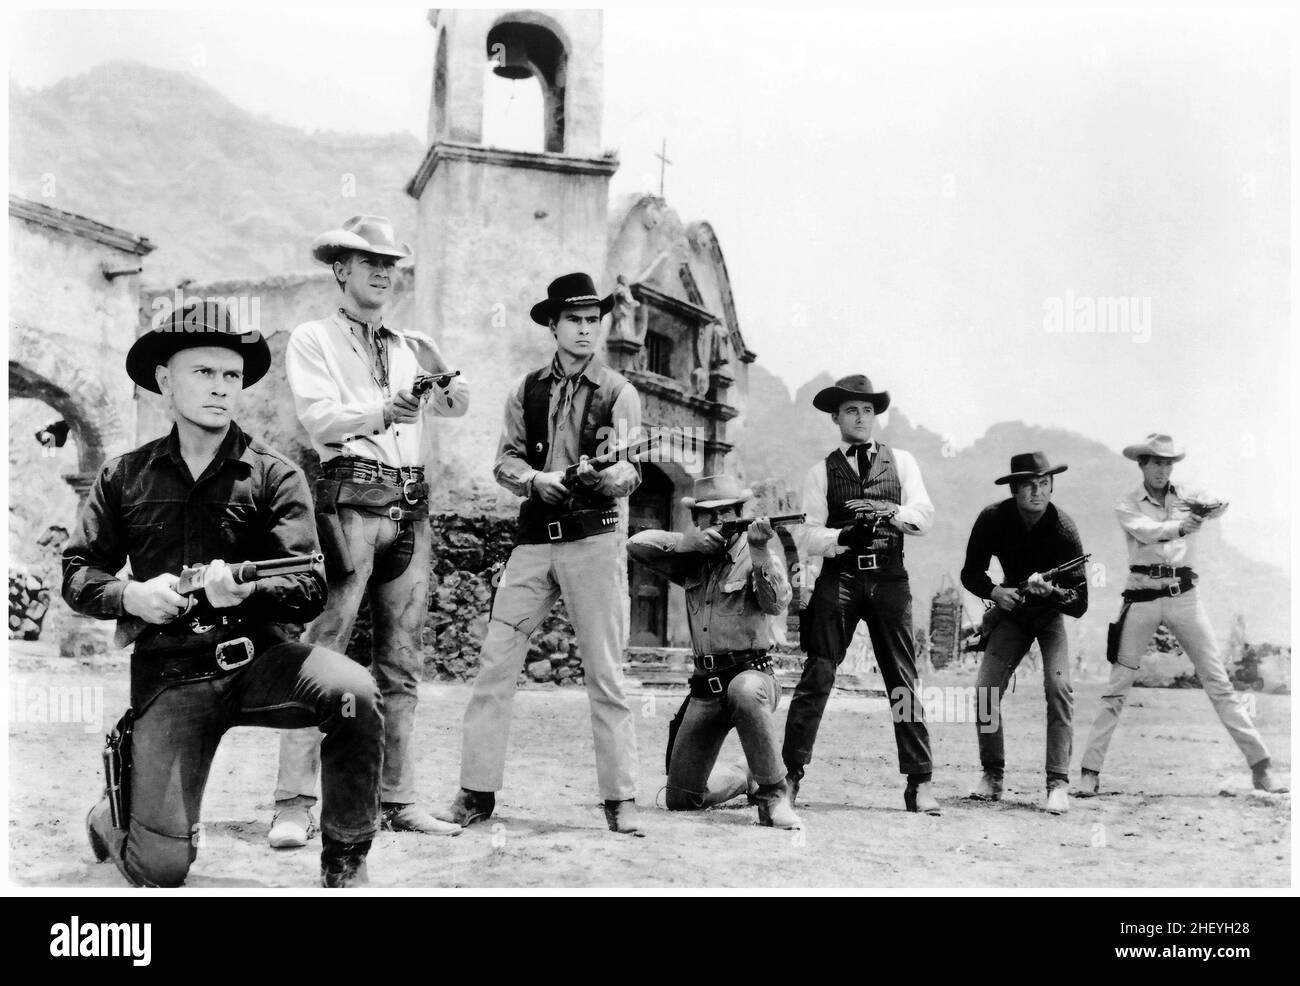 La magnífica foto publicitaria de Seven cast. 1960. Yul Brynner, Steve McQueen, Charles Bronson, James Coburn, Robert Vaughn, Eli Wallach. Foto de stock